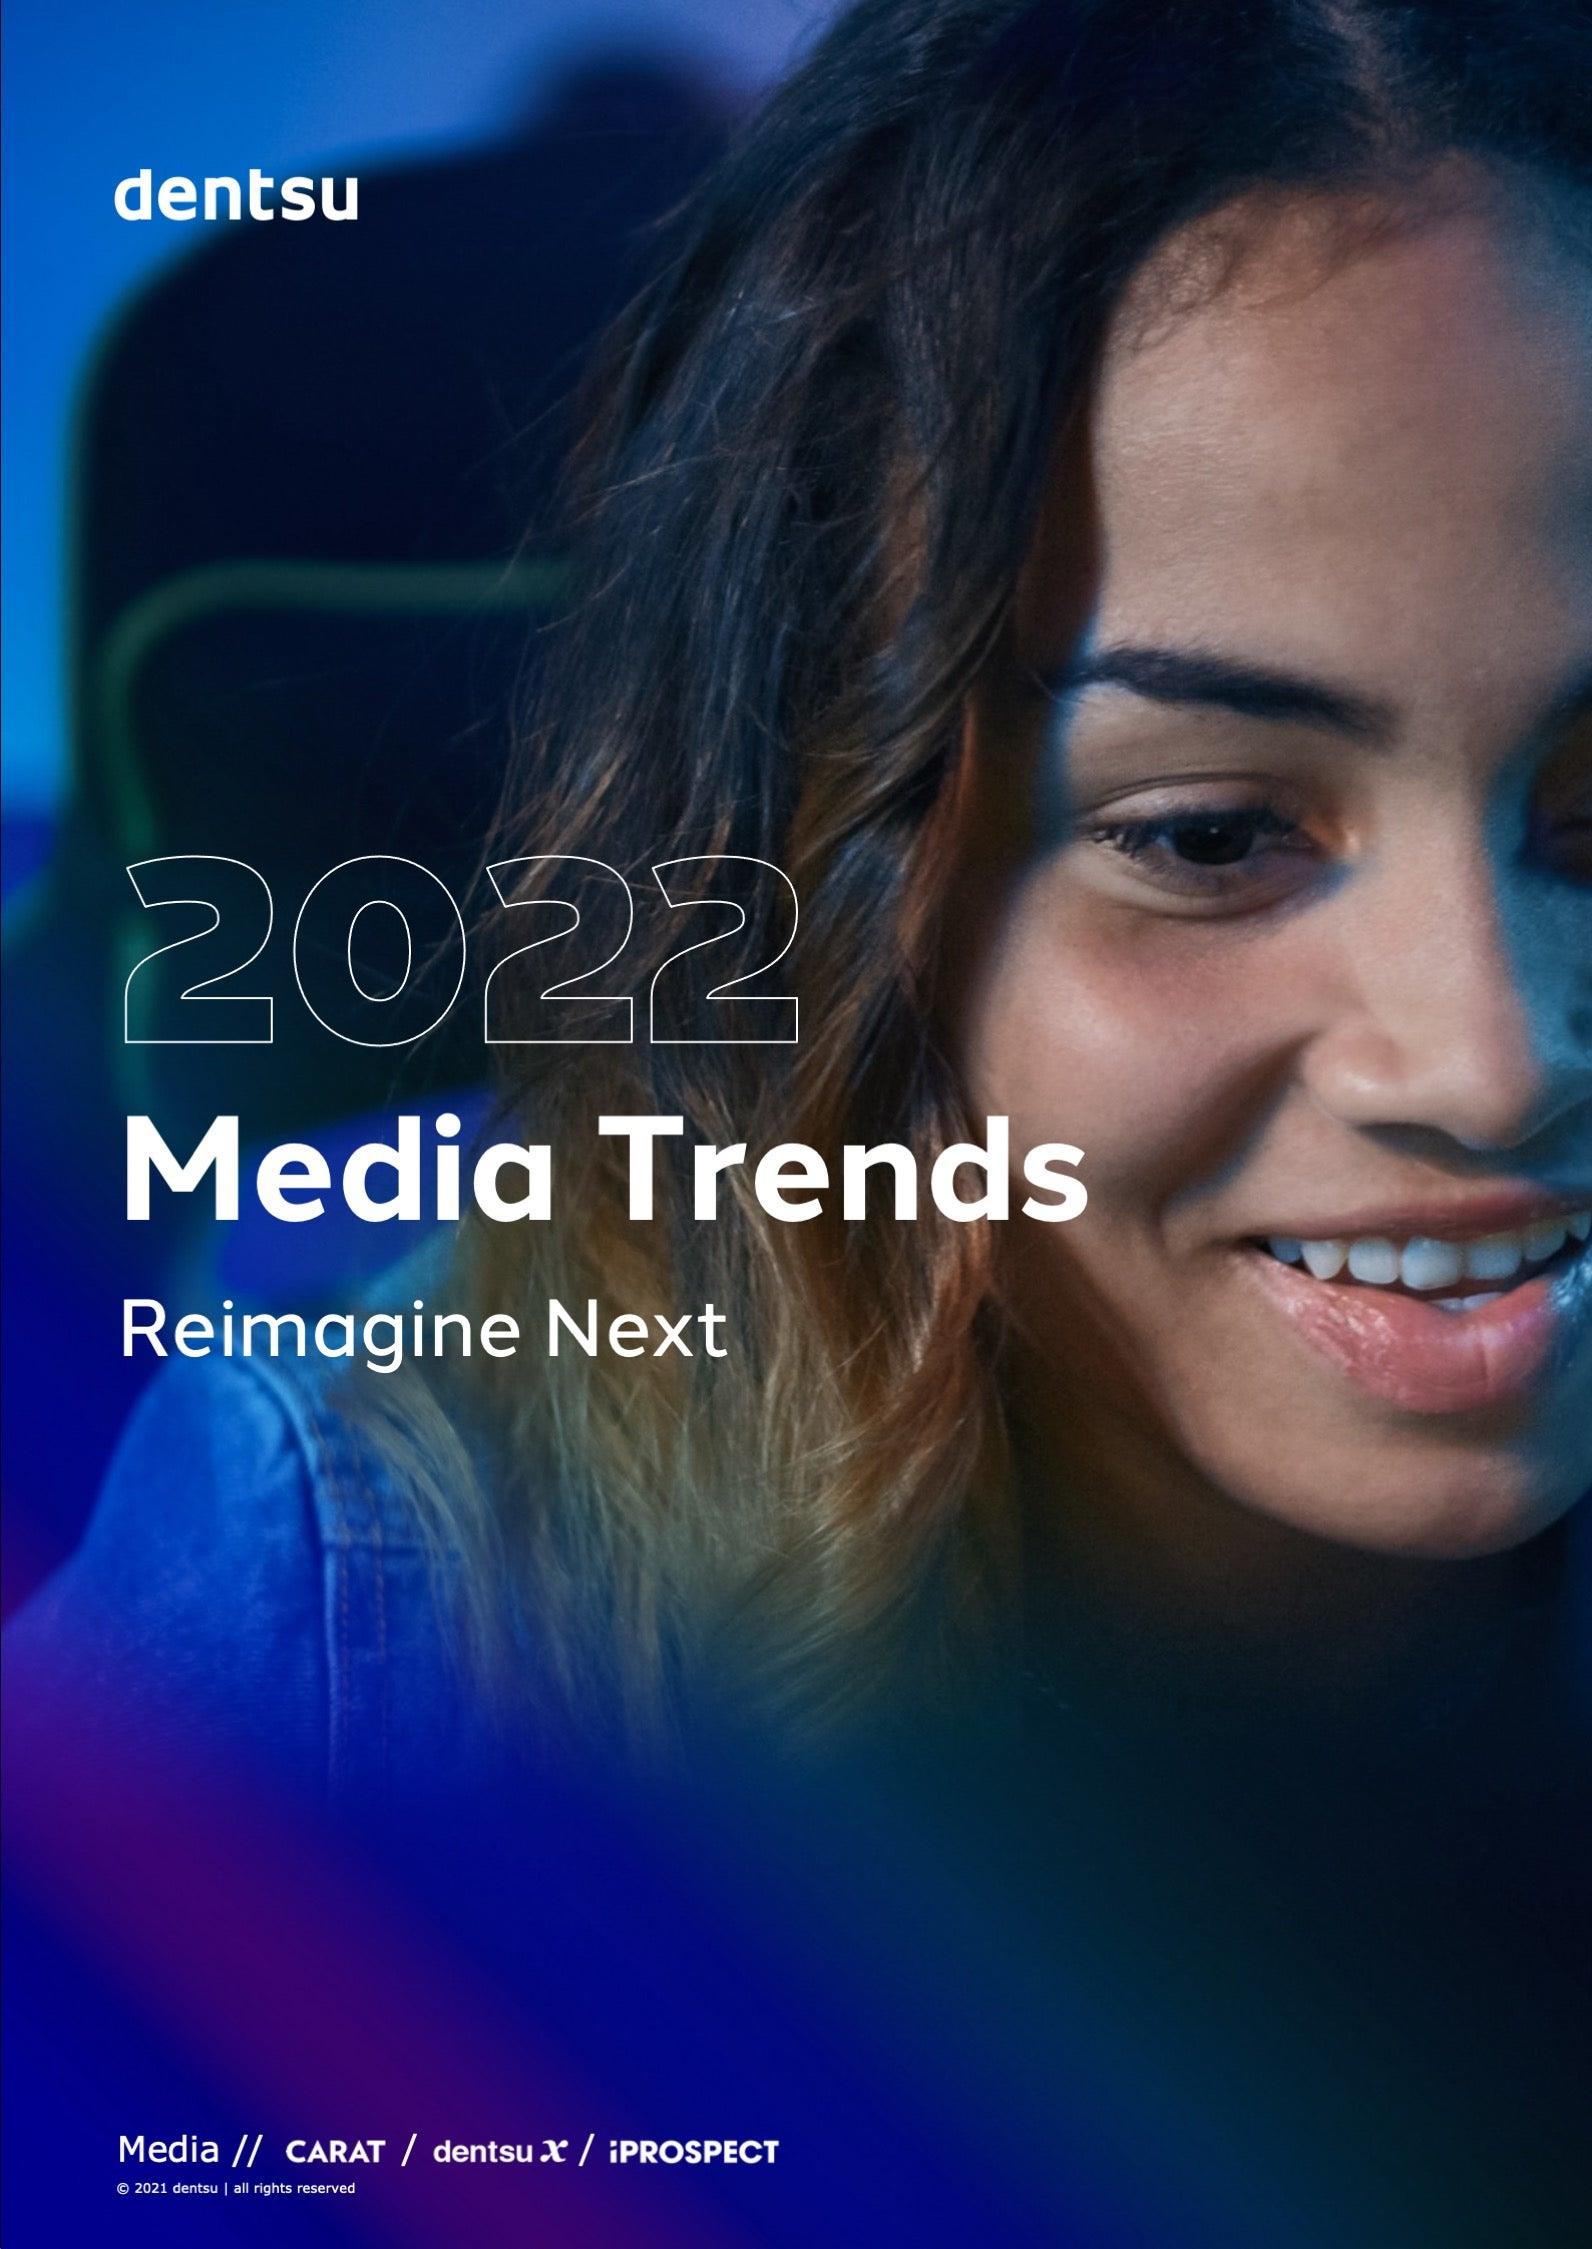 Media trends 2022 from dentsu